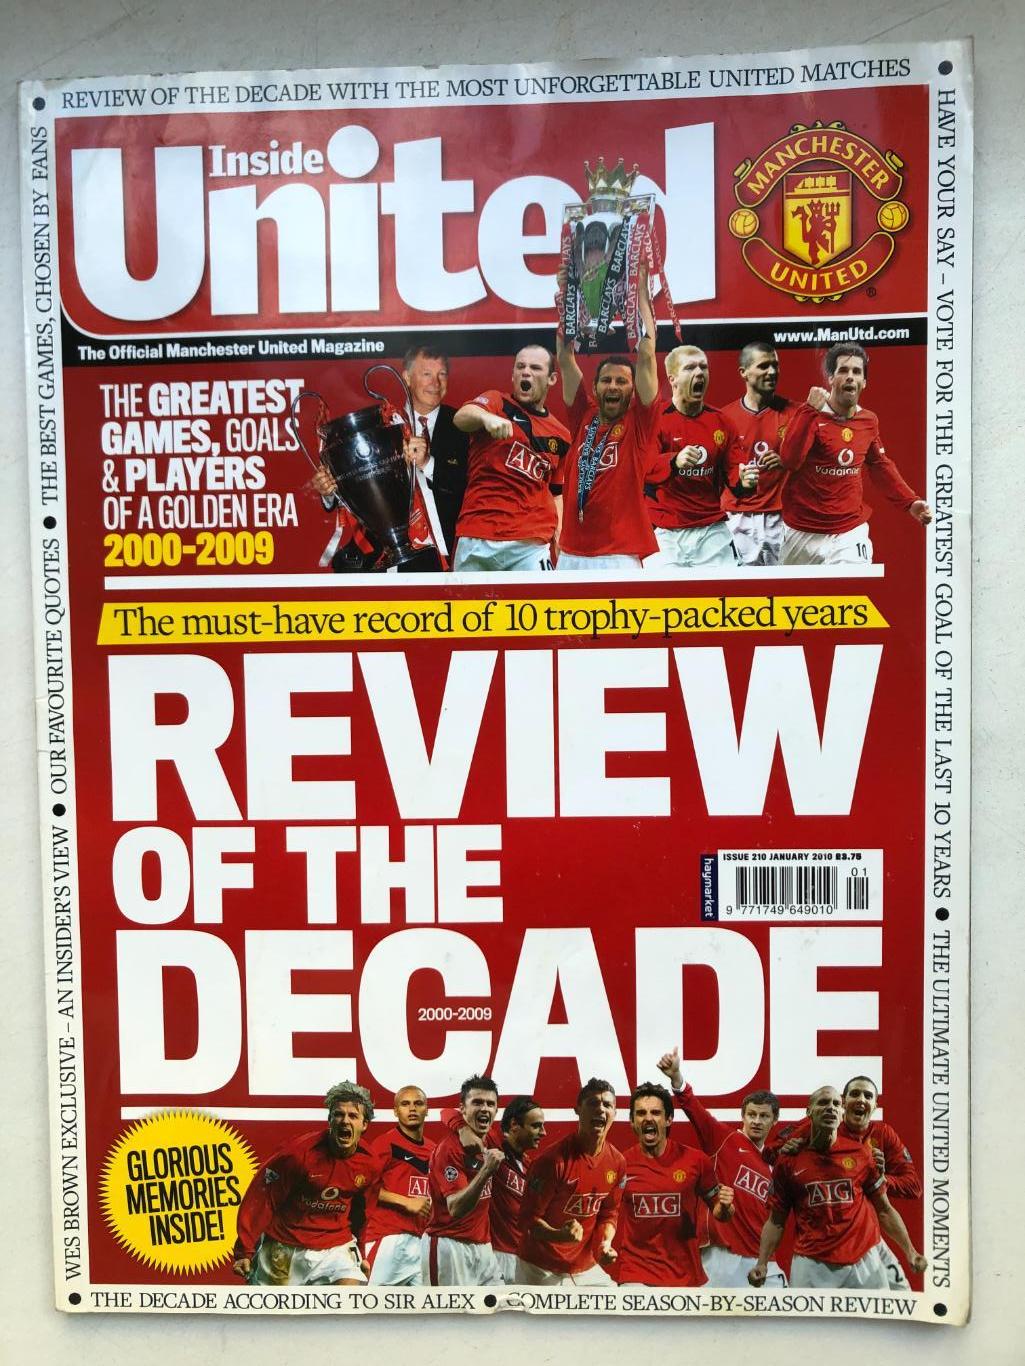 Манчестер Юнайтед официальный журнал январь 2010 Золотая эра 2000-2009